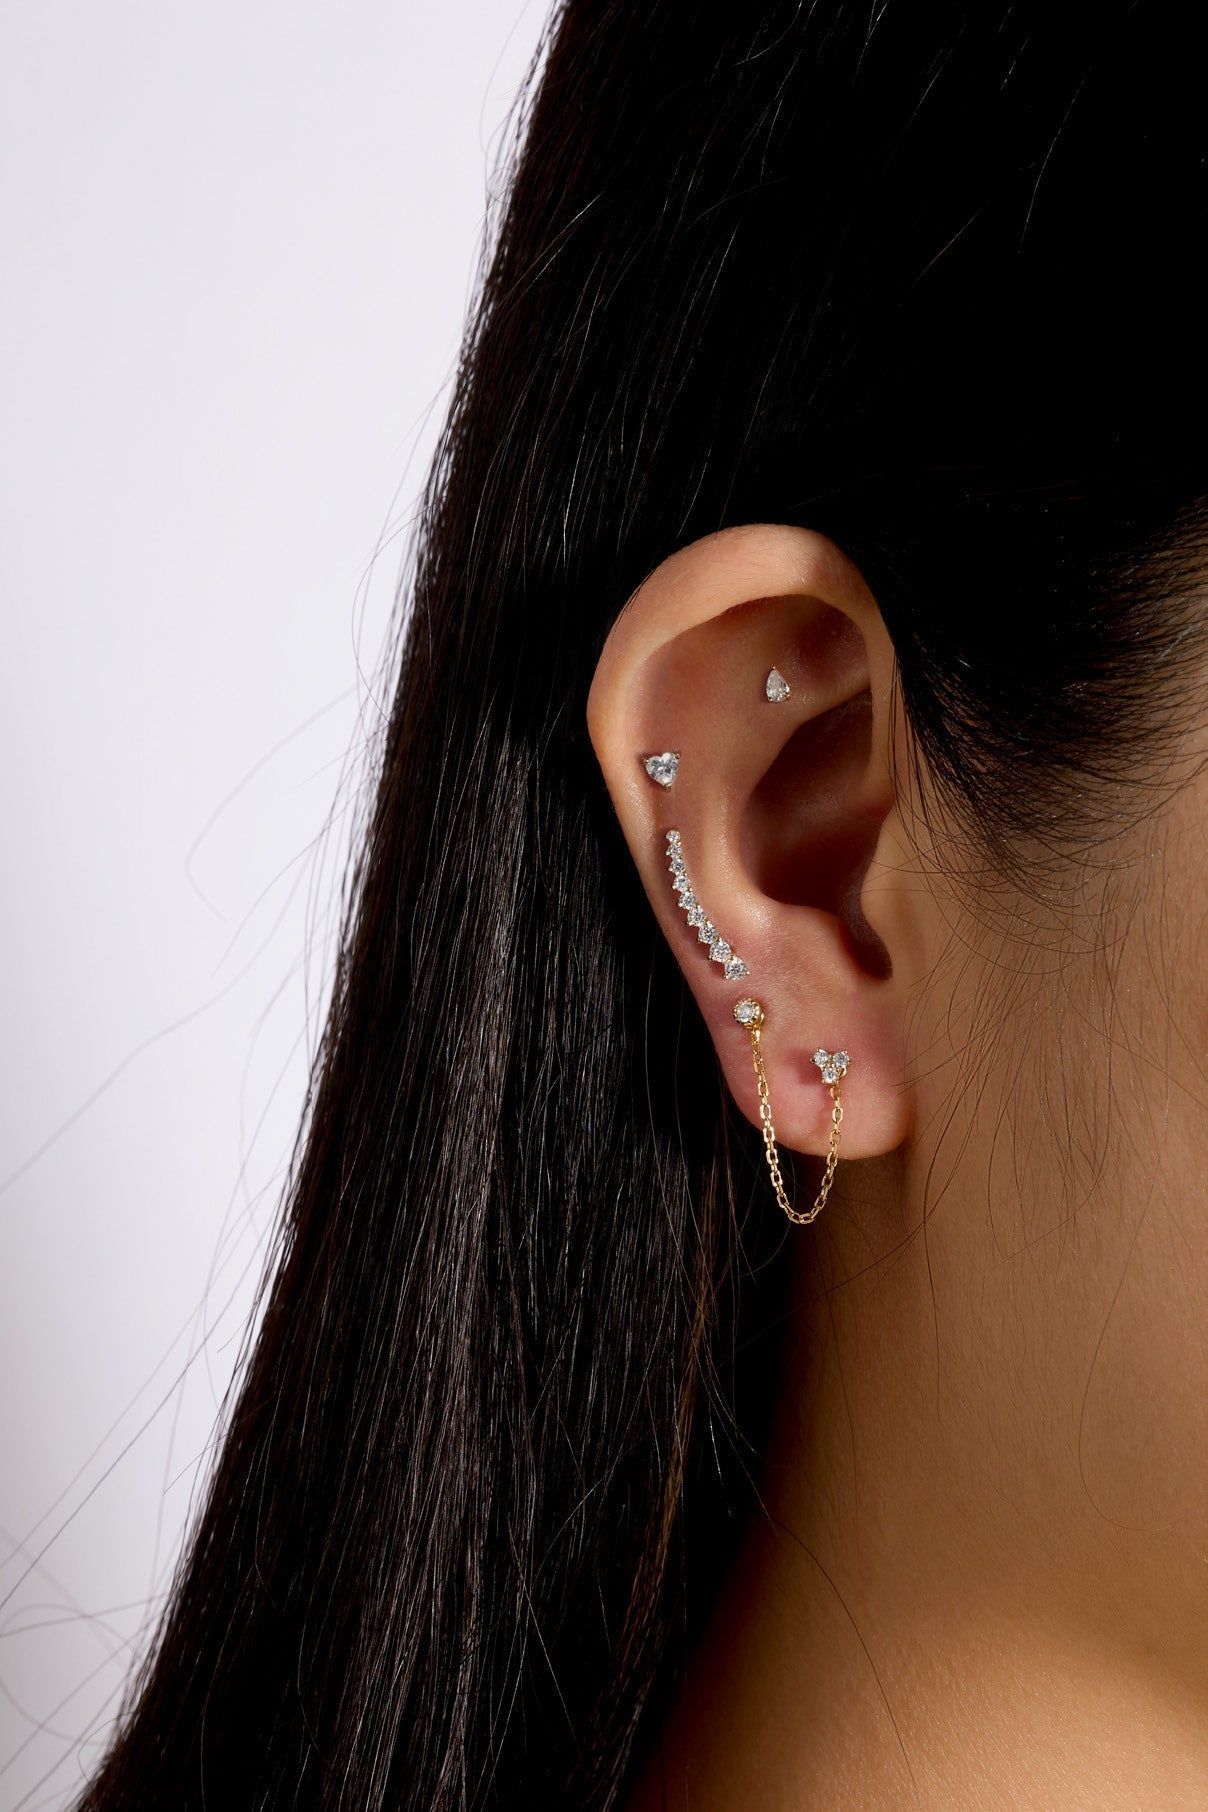 a woman wearing a pair of ear piercings